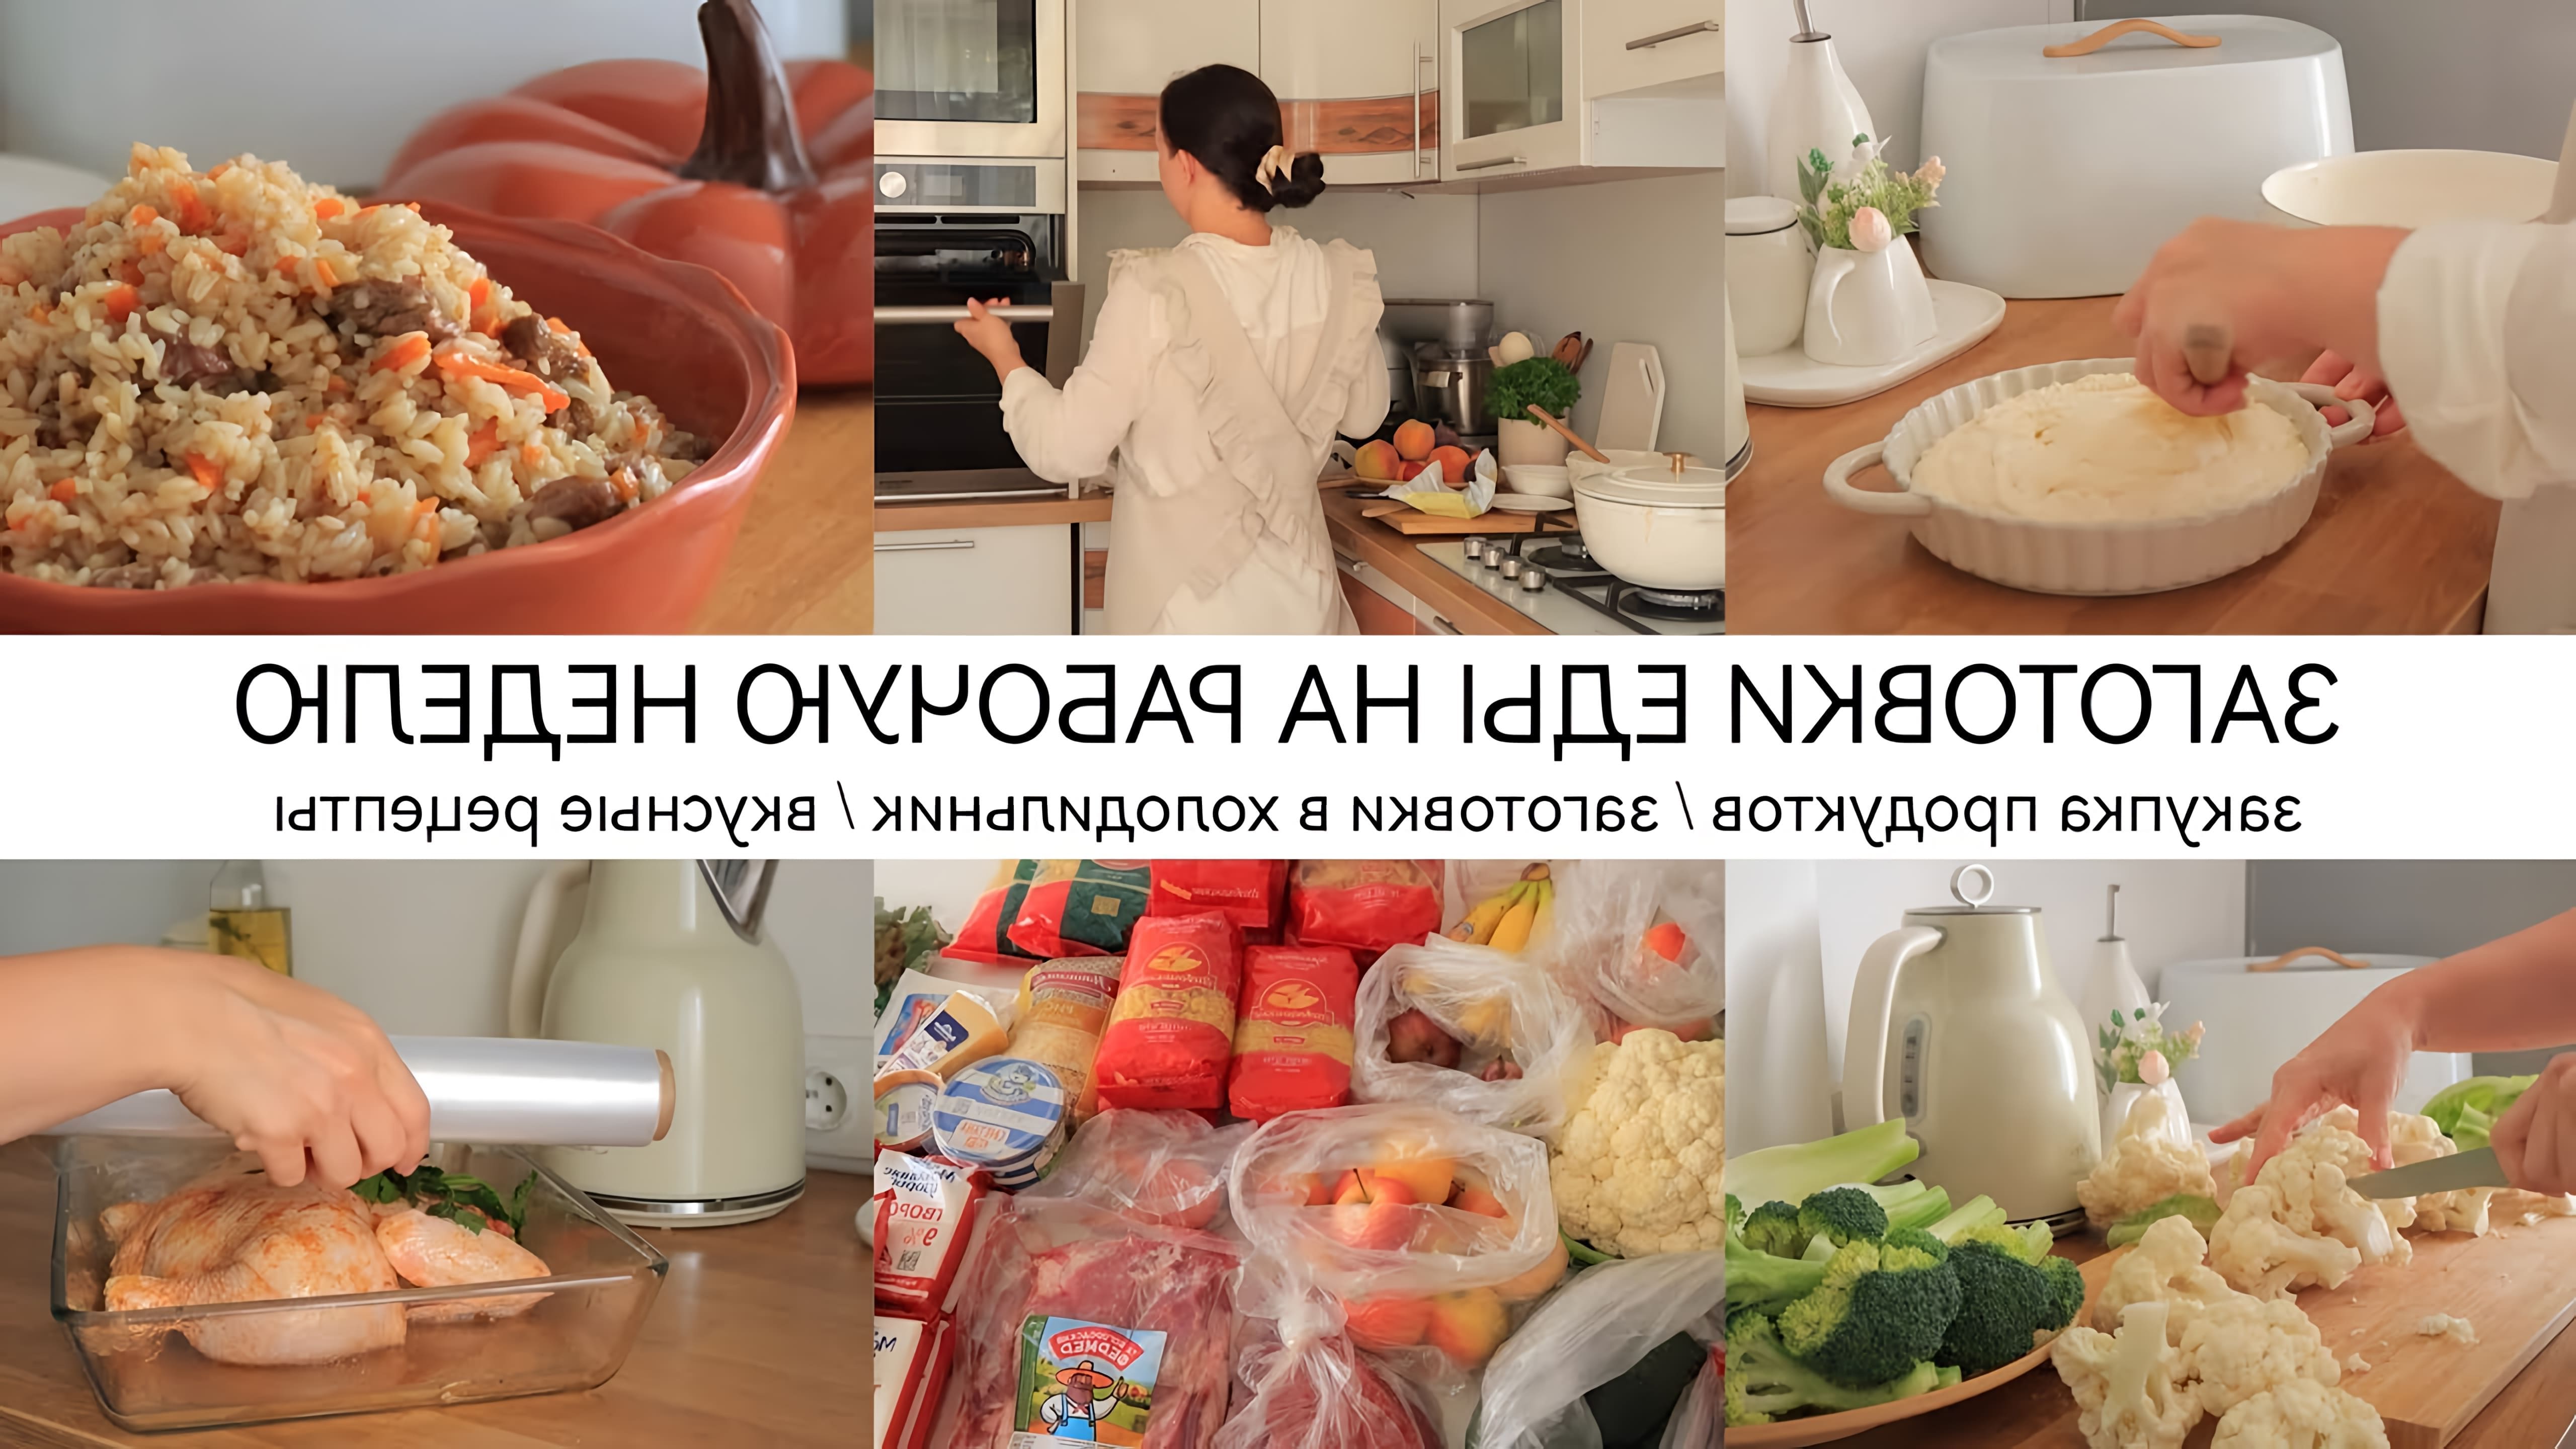 В этом видео автор показывает процесс закупки продуктов для приготовления еды на рабочую неделю